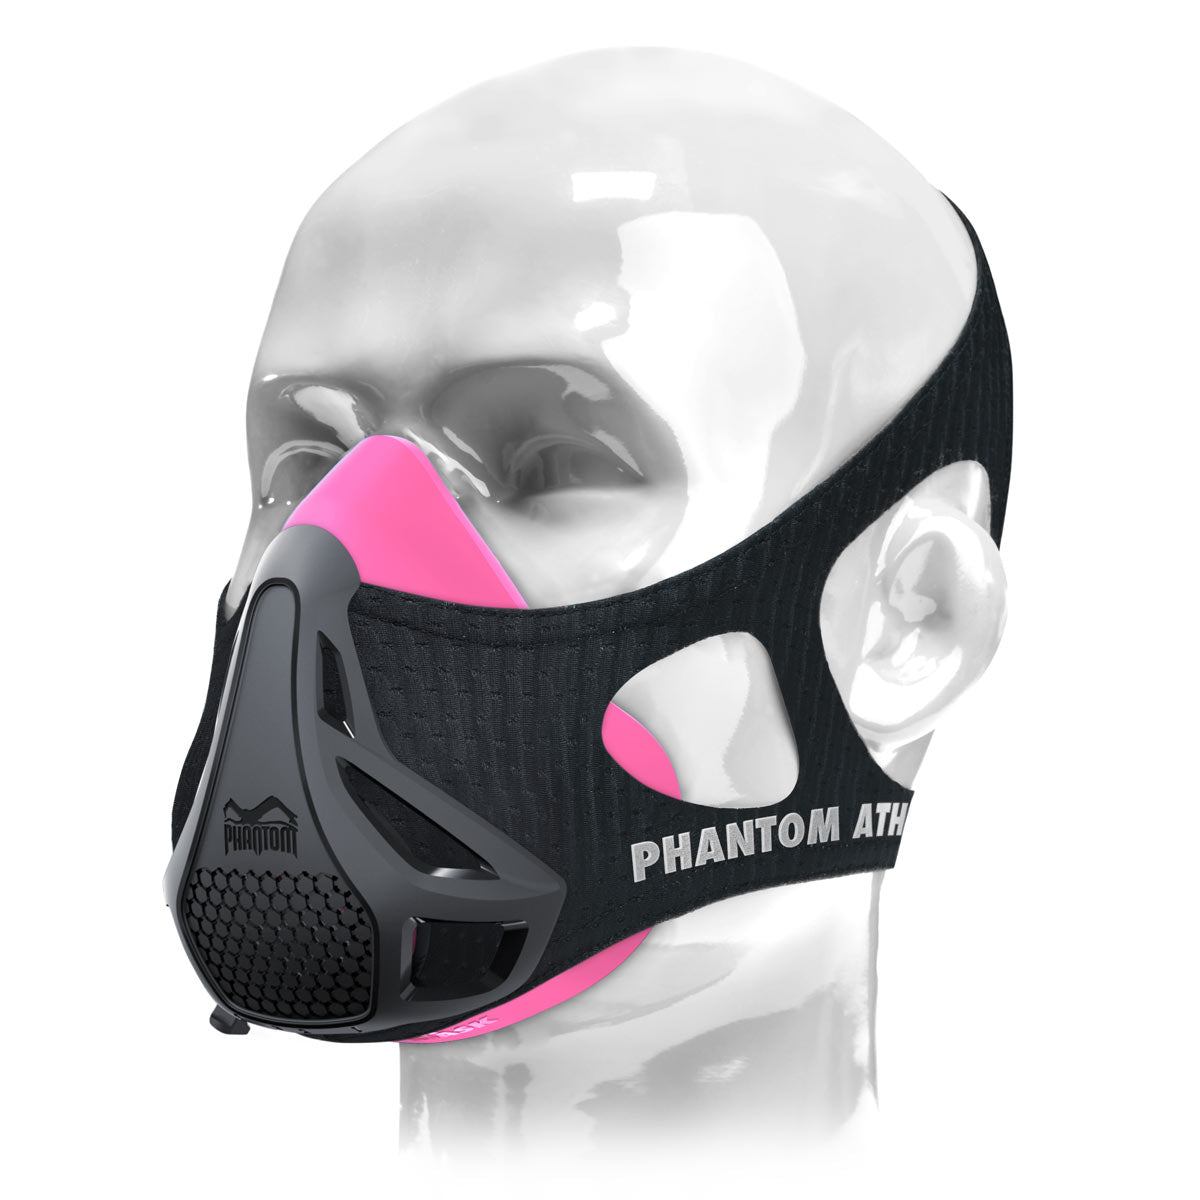 Тренировъчната маска Phantom . Оригинала. Патентован и награден, за да изведе фитнеса ви на следващото ниво. Сега в розово/черно.